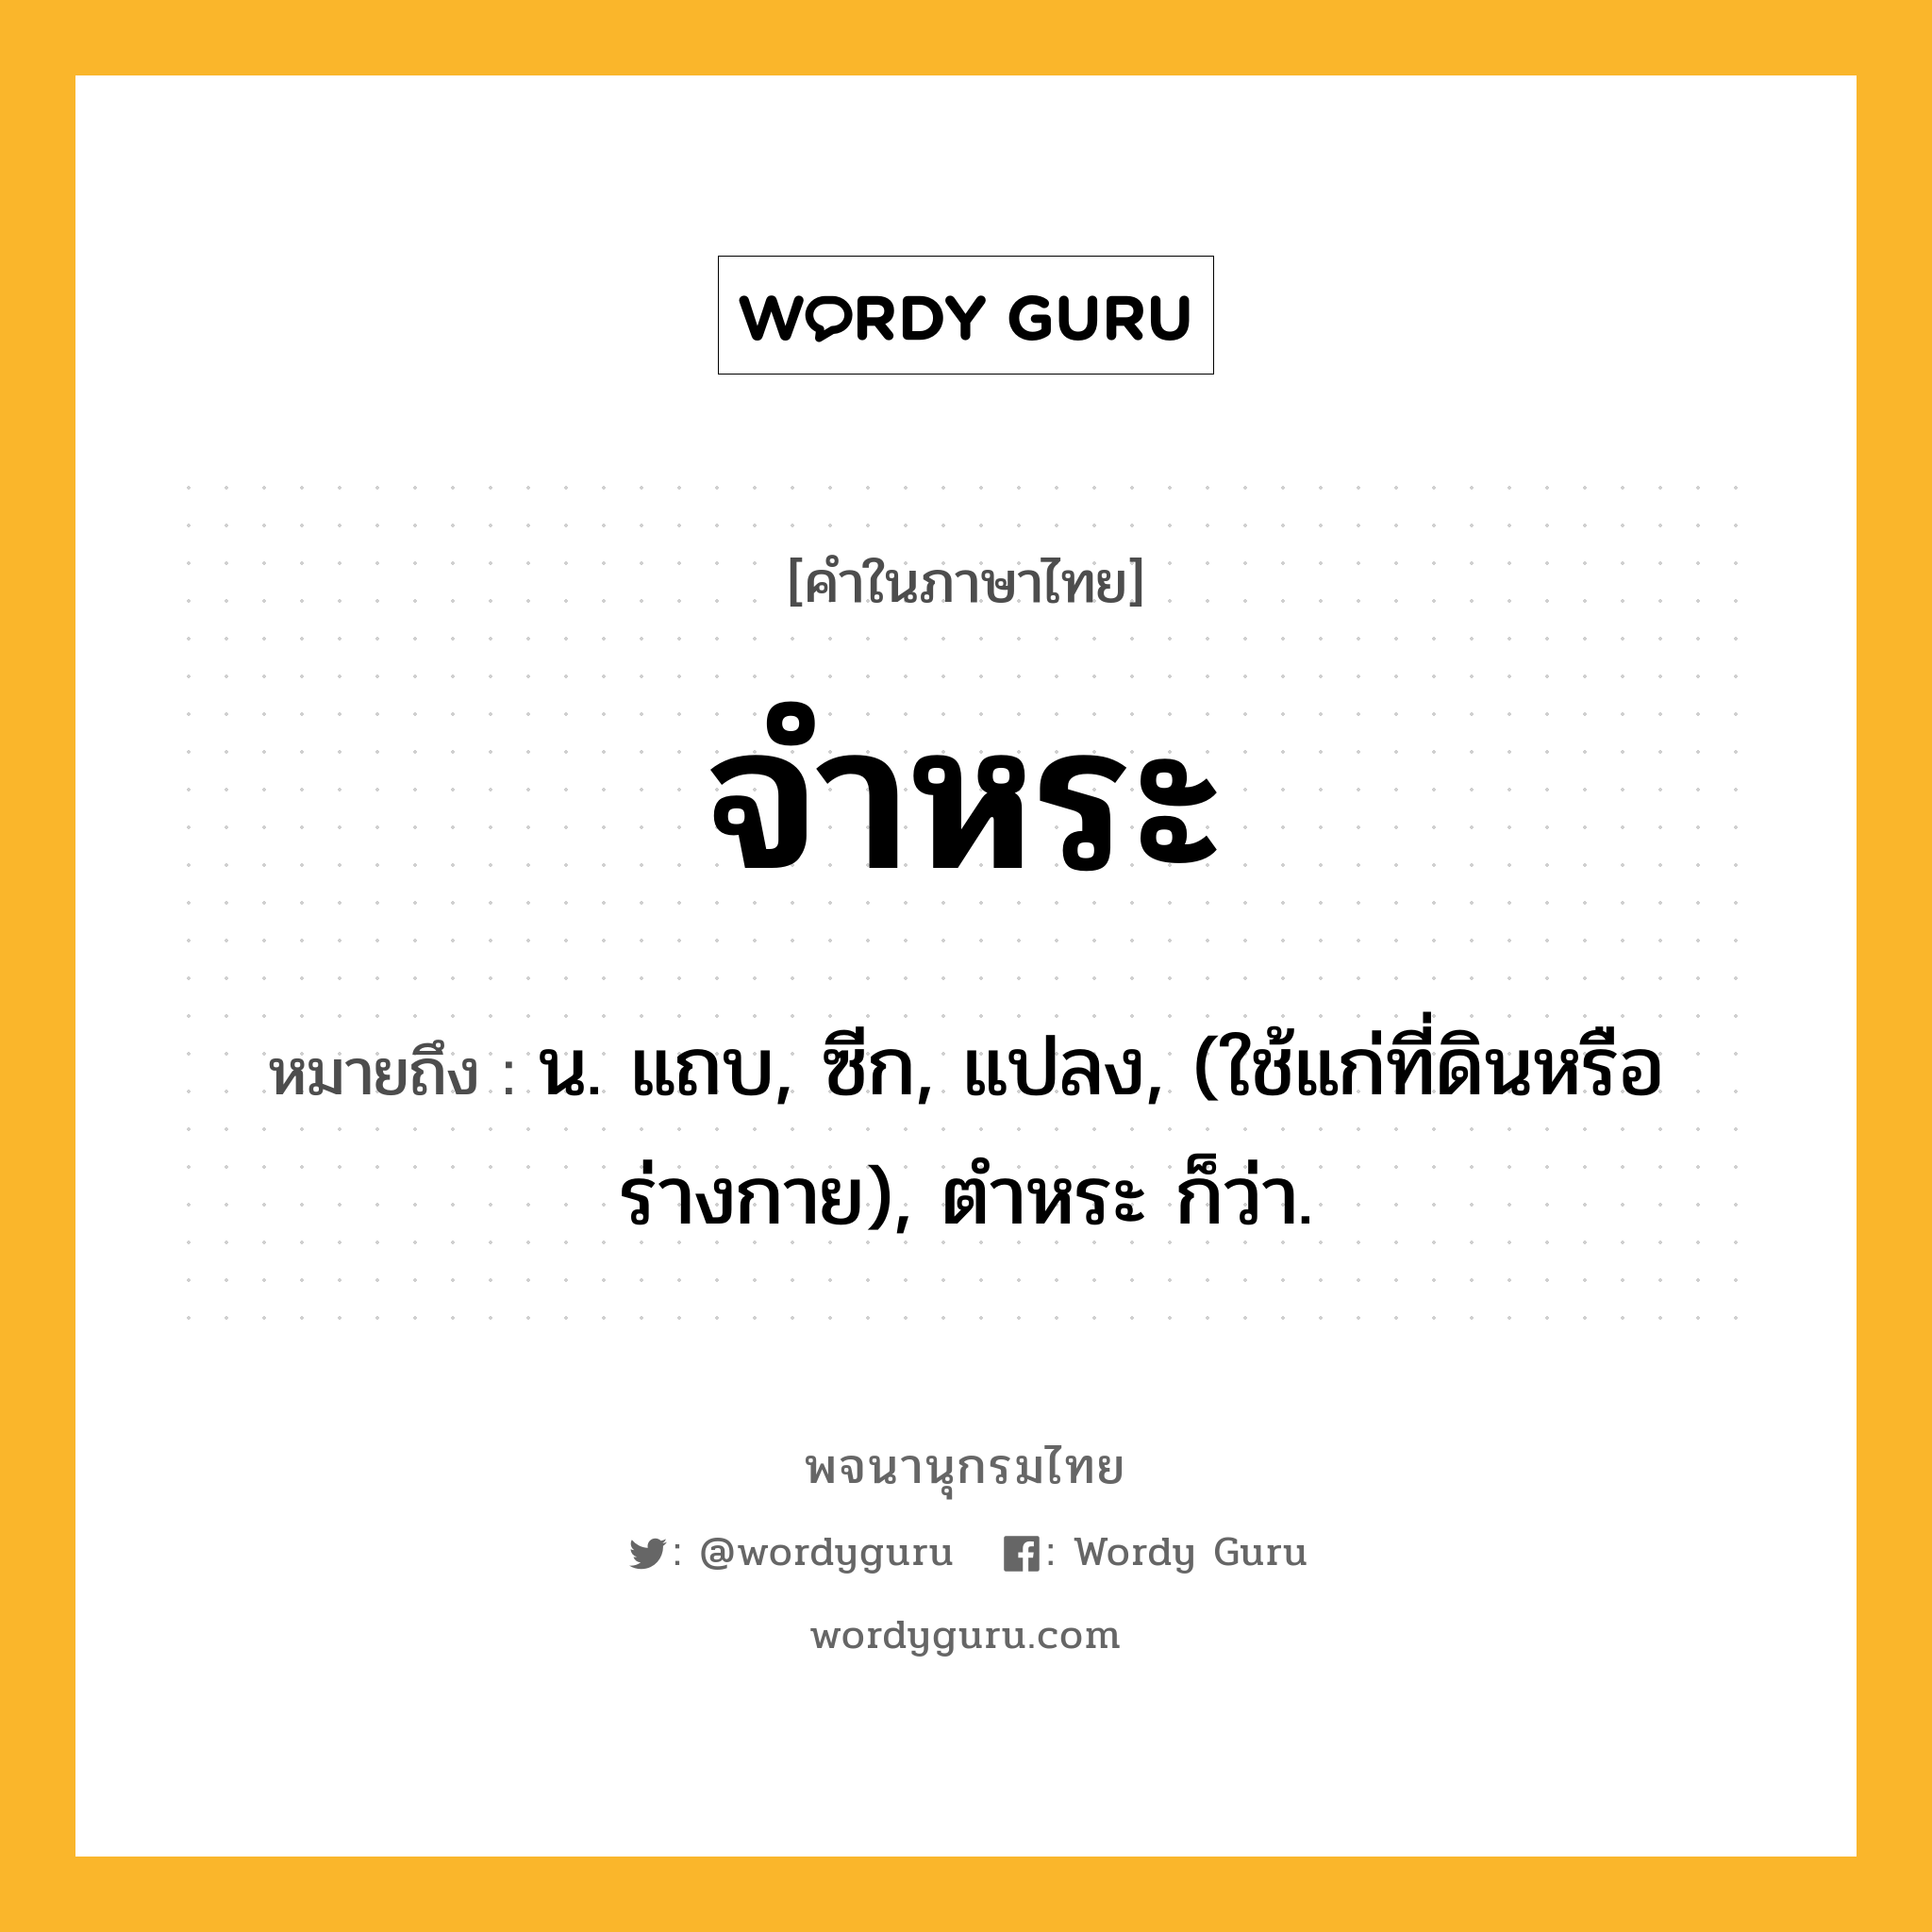 จำหระ หมายถึงอะไร?, คำในภาษาไทย จำหระ หมายถึง น. แถบ, ซีก, แปลง, (ใช้แก่ที่ดินหรือร่างกาย), ตําหระ ก็ว่า.